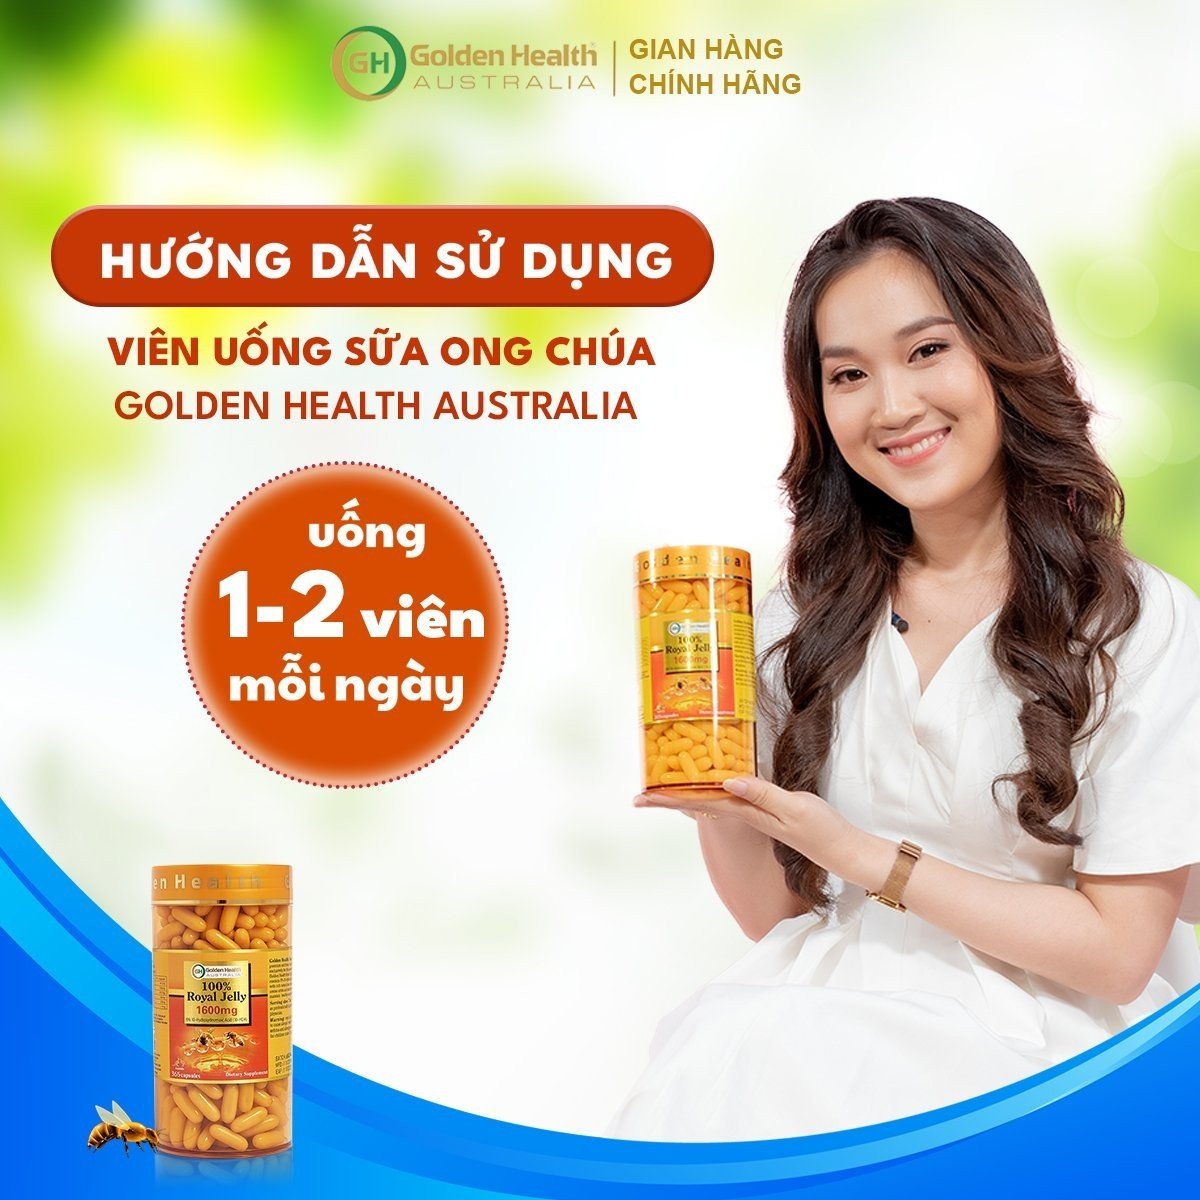 Viên Uống Sữa Ong Chúa Golden Health Royal Jelly 1600mg Hộp 100 Viên, Giúp Da Chống Lão Hóa, Nám, Sạm, Chống Mất Ngủ, Bảo Vệ Sức Khỏe Toàn Diện - Nhập Khẩu Chính Ngạch Từ Úc